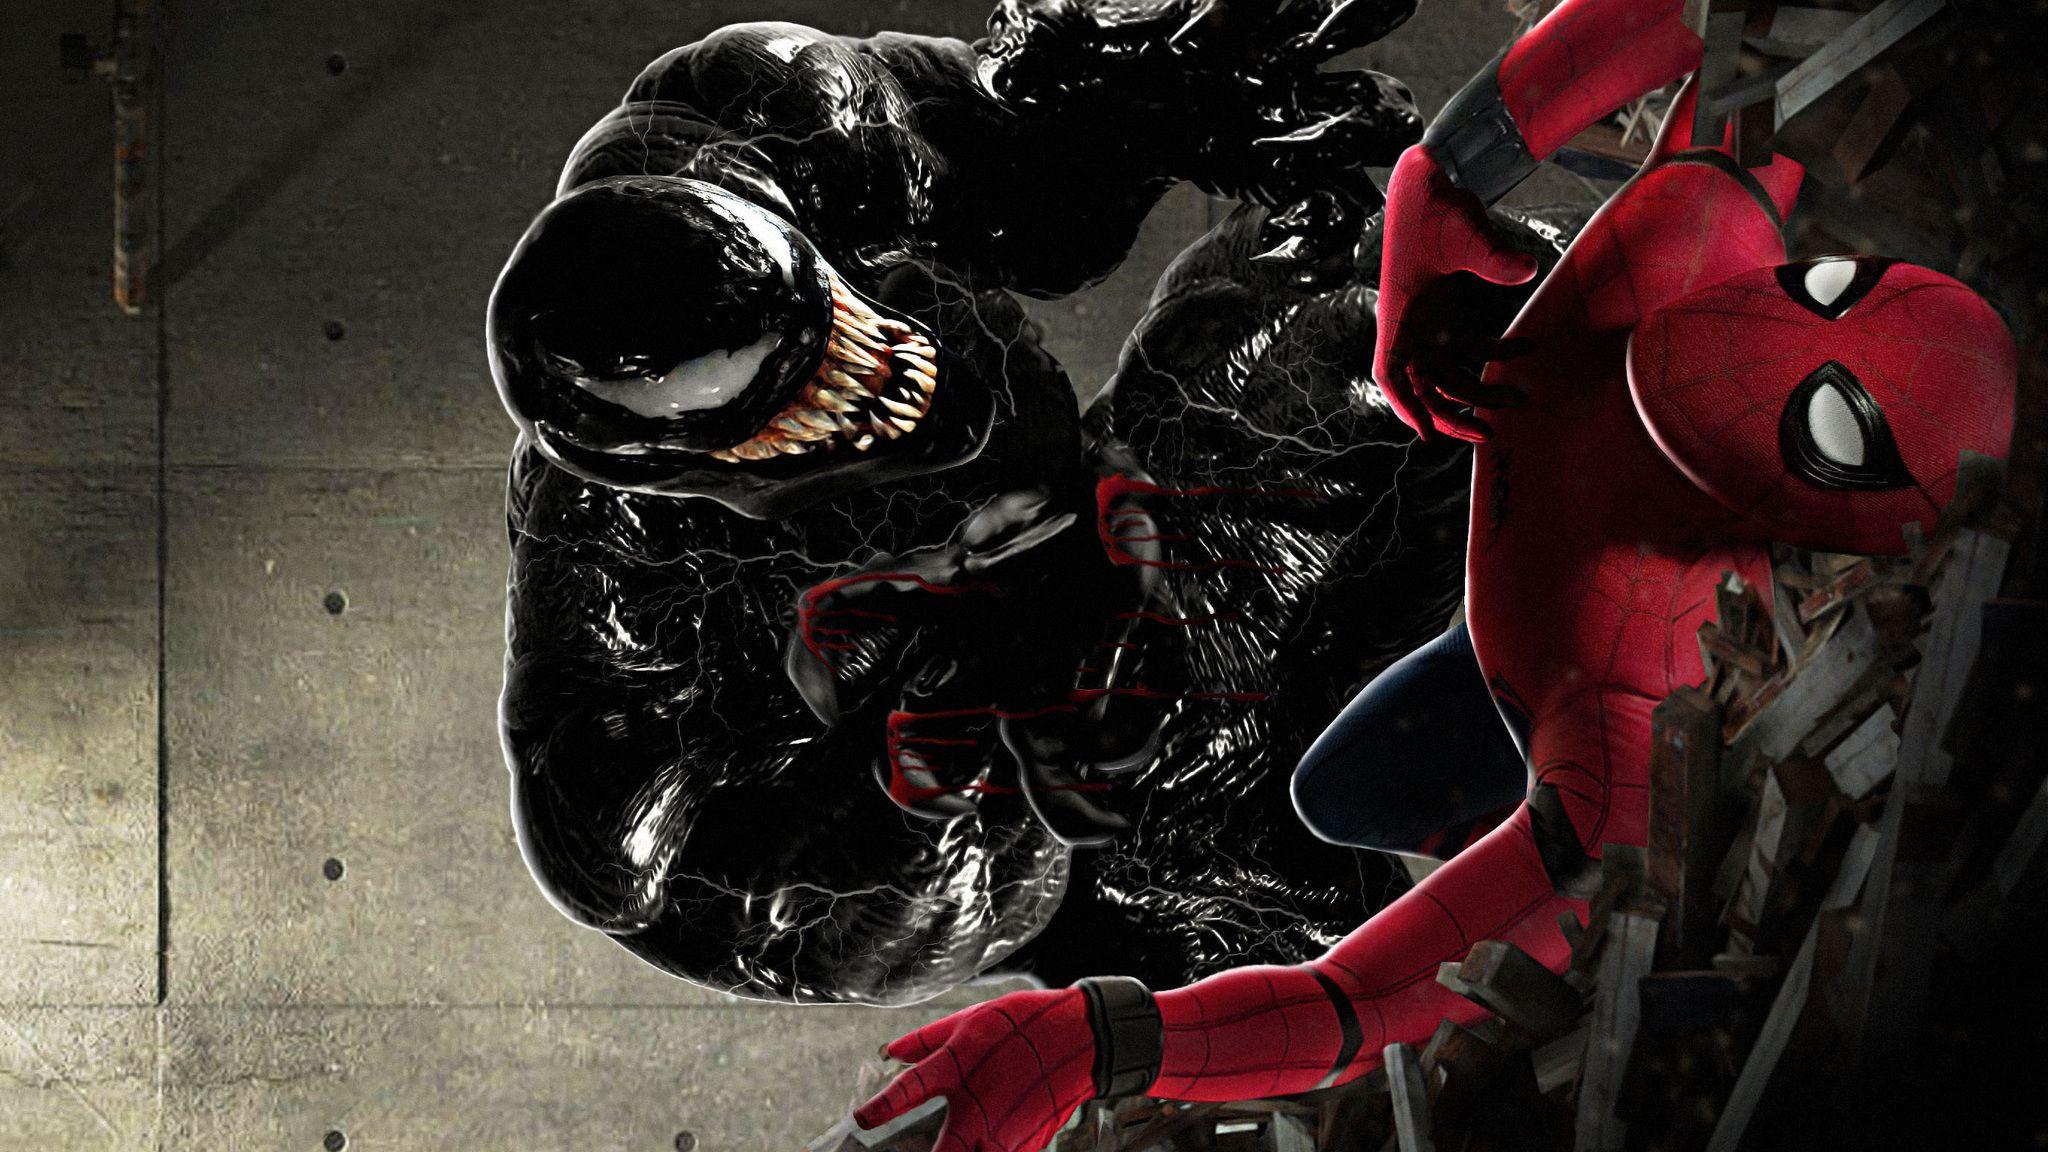 Spider-Man vs Venom Wallpapers - Top Những Hình Ảnh Đẹp